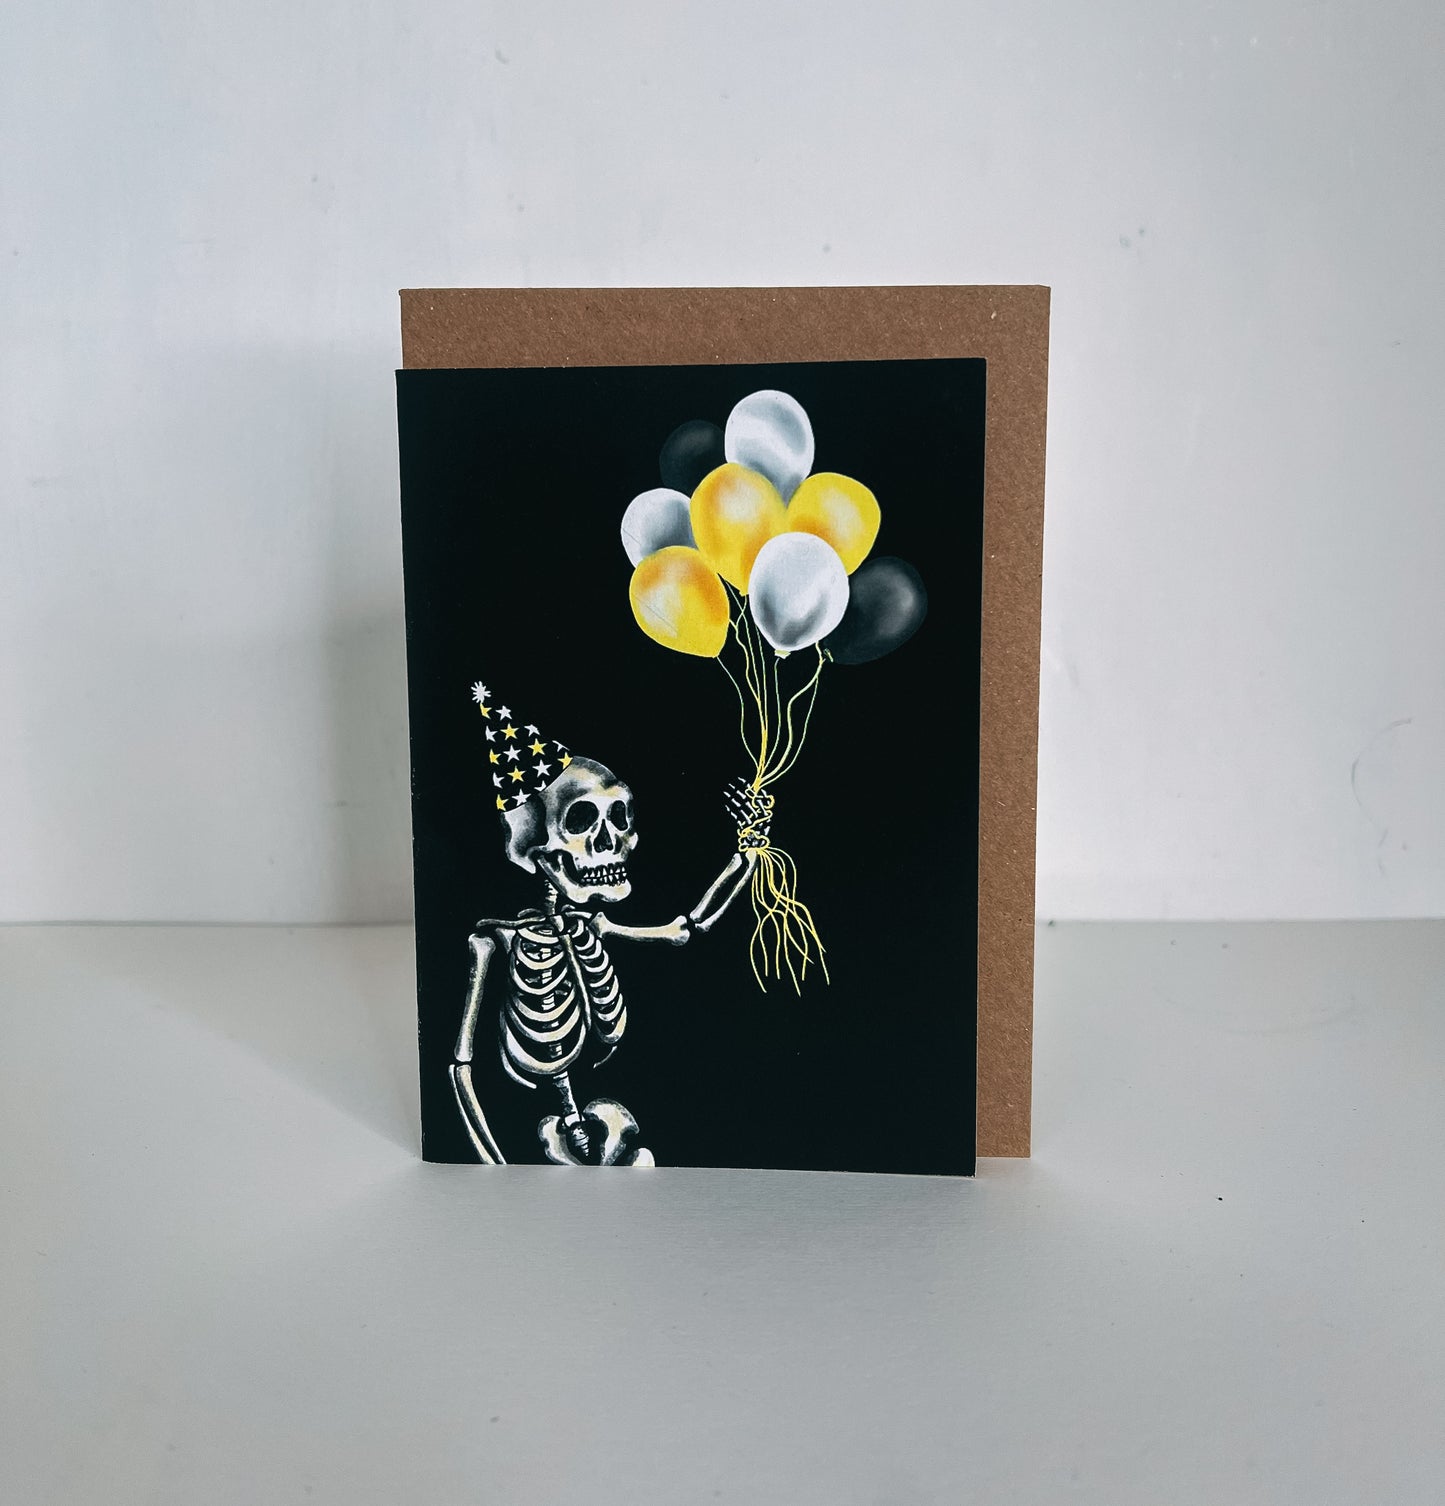 Balloon Skeleton Gothic Birthday Card